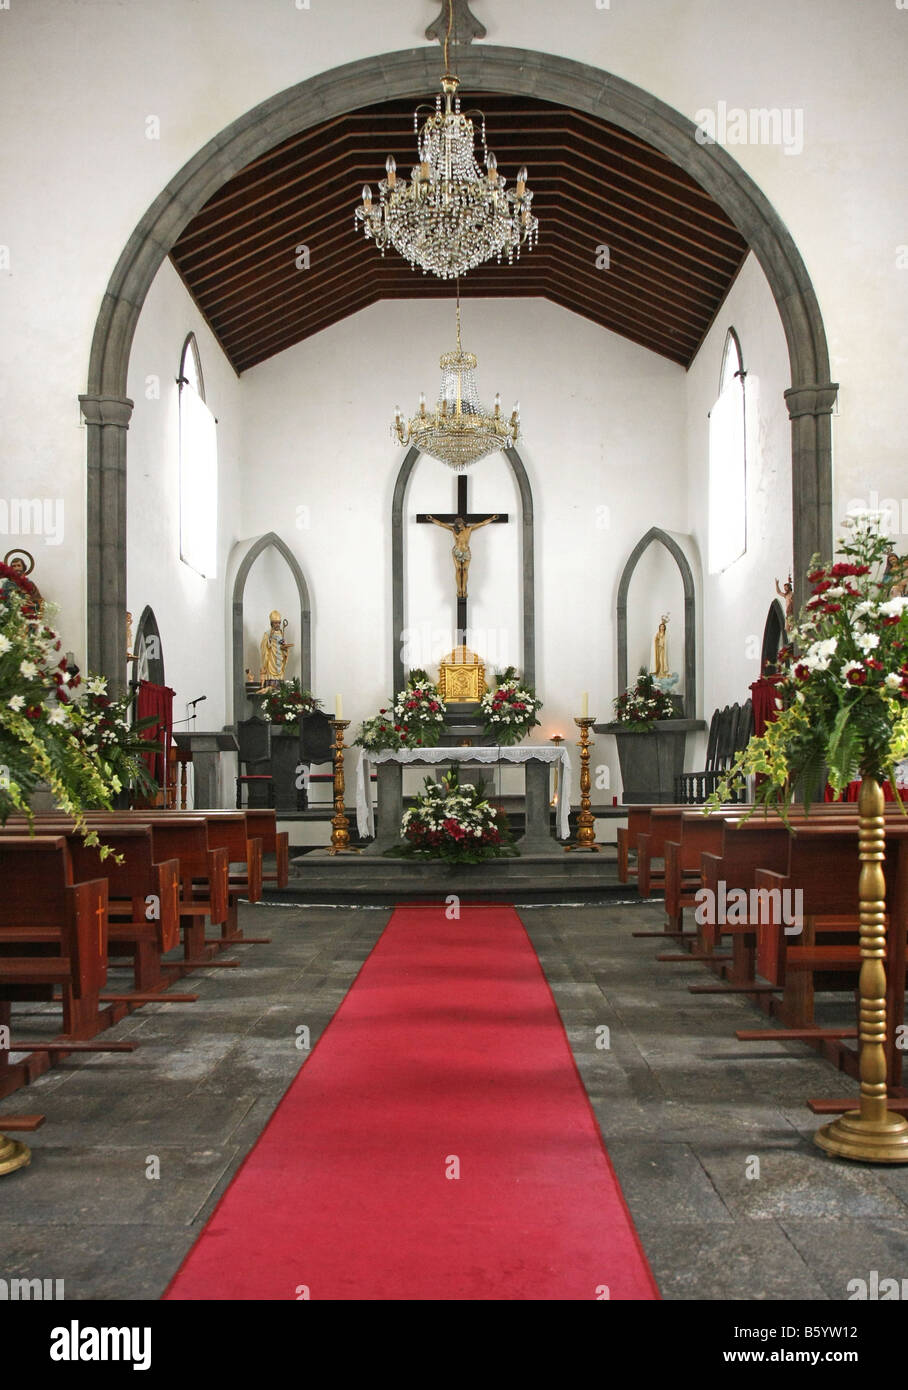 Inside Igreja de São Nicolau - The church of Santa Claus, Sete Cidades, São Miguel, Azores, Portugal Stock Photo